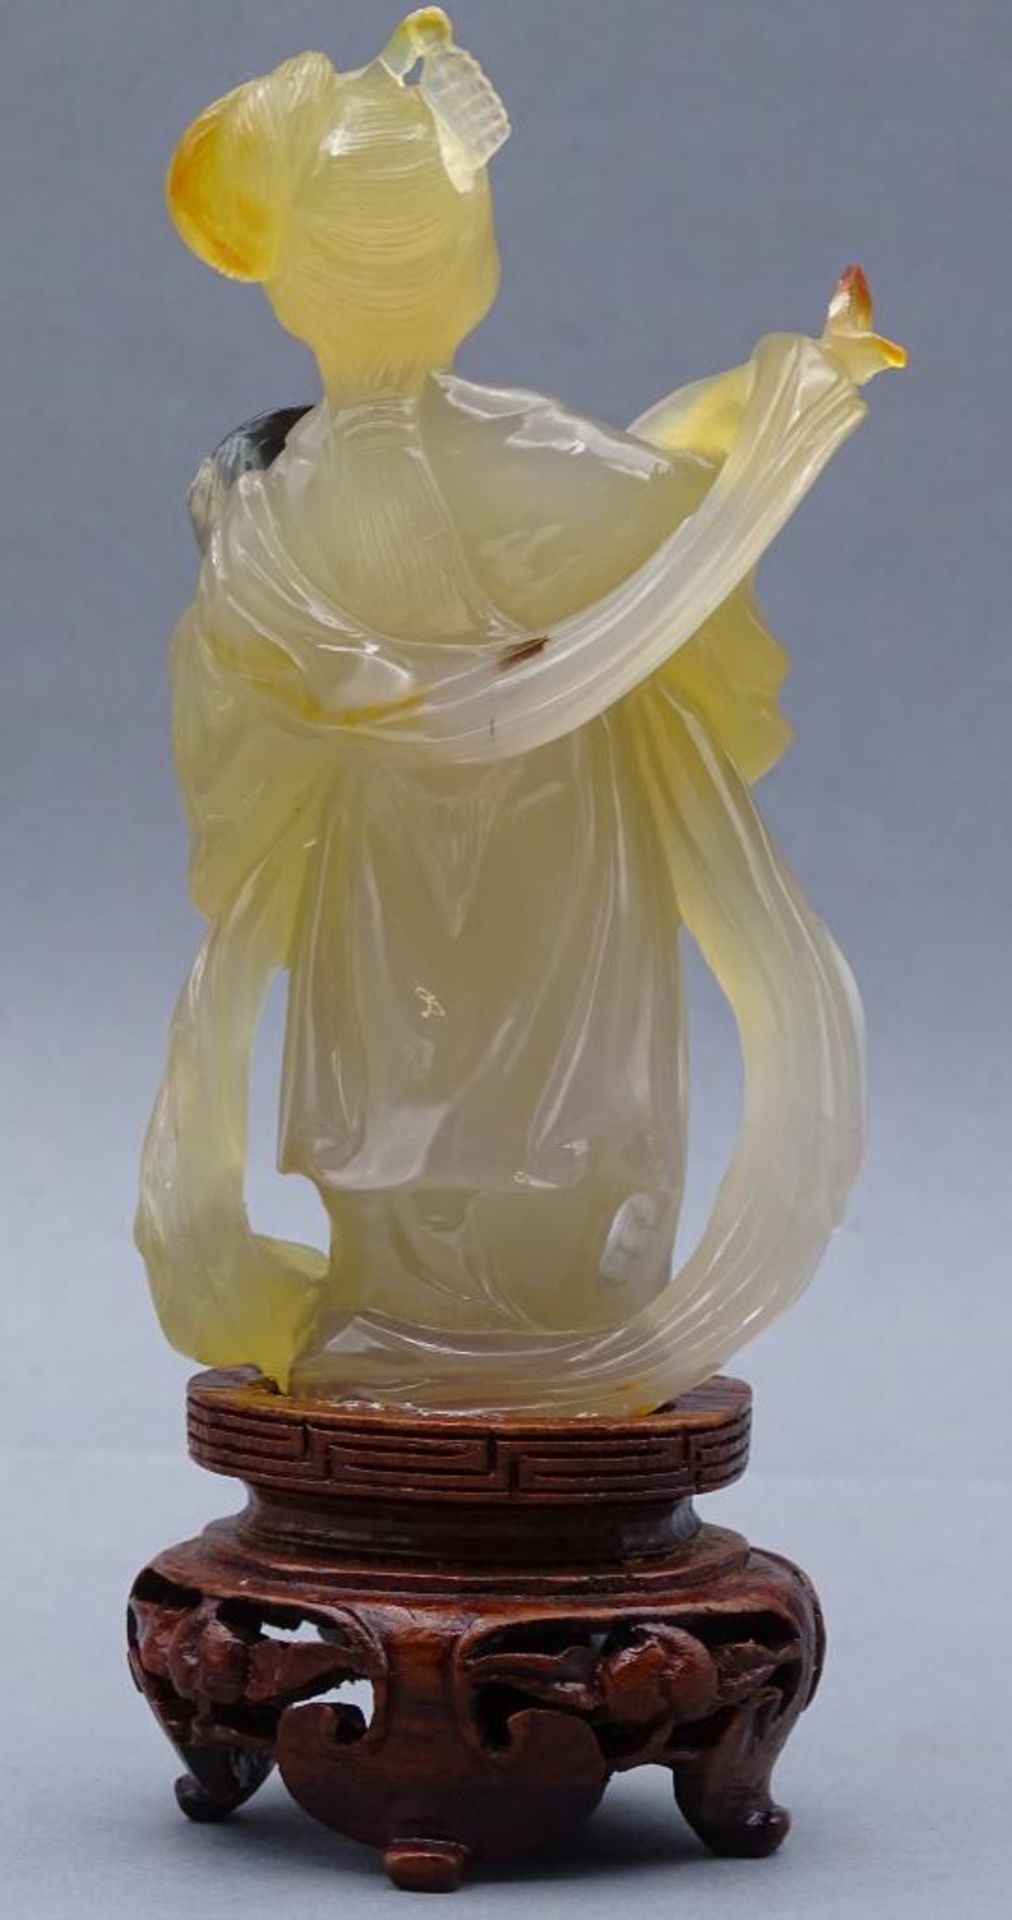 gelbe Jadeschnitzerei, Chinesin mit Fächer auf Holzsockel, China, 18/19. Jhd?, H-ca. 14 cm, rechte - Bild 4 aus 10